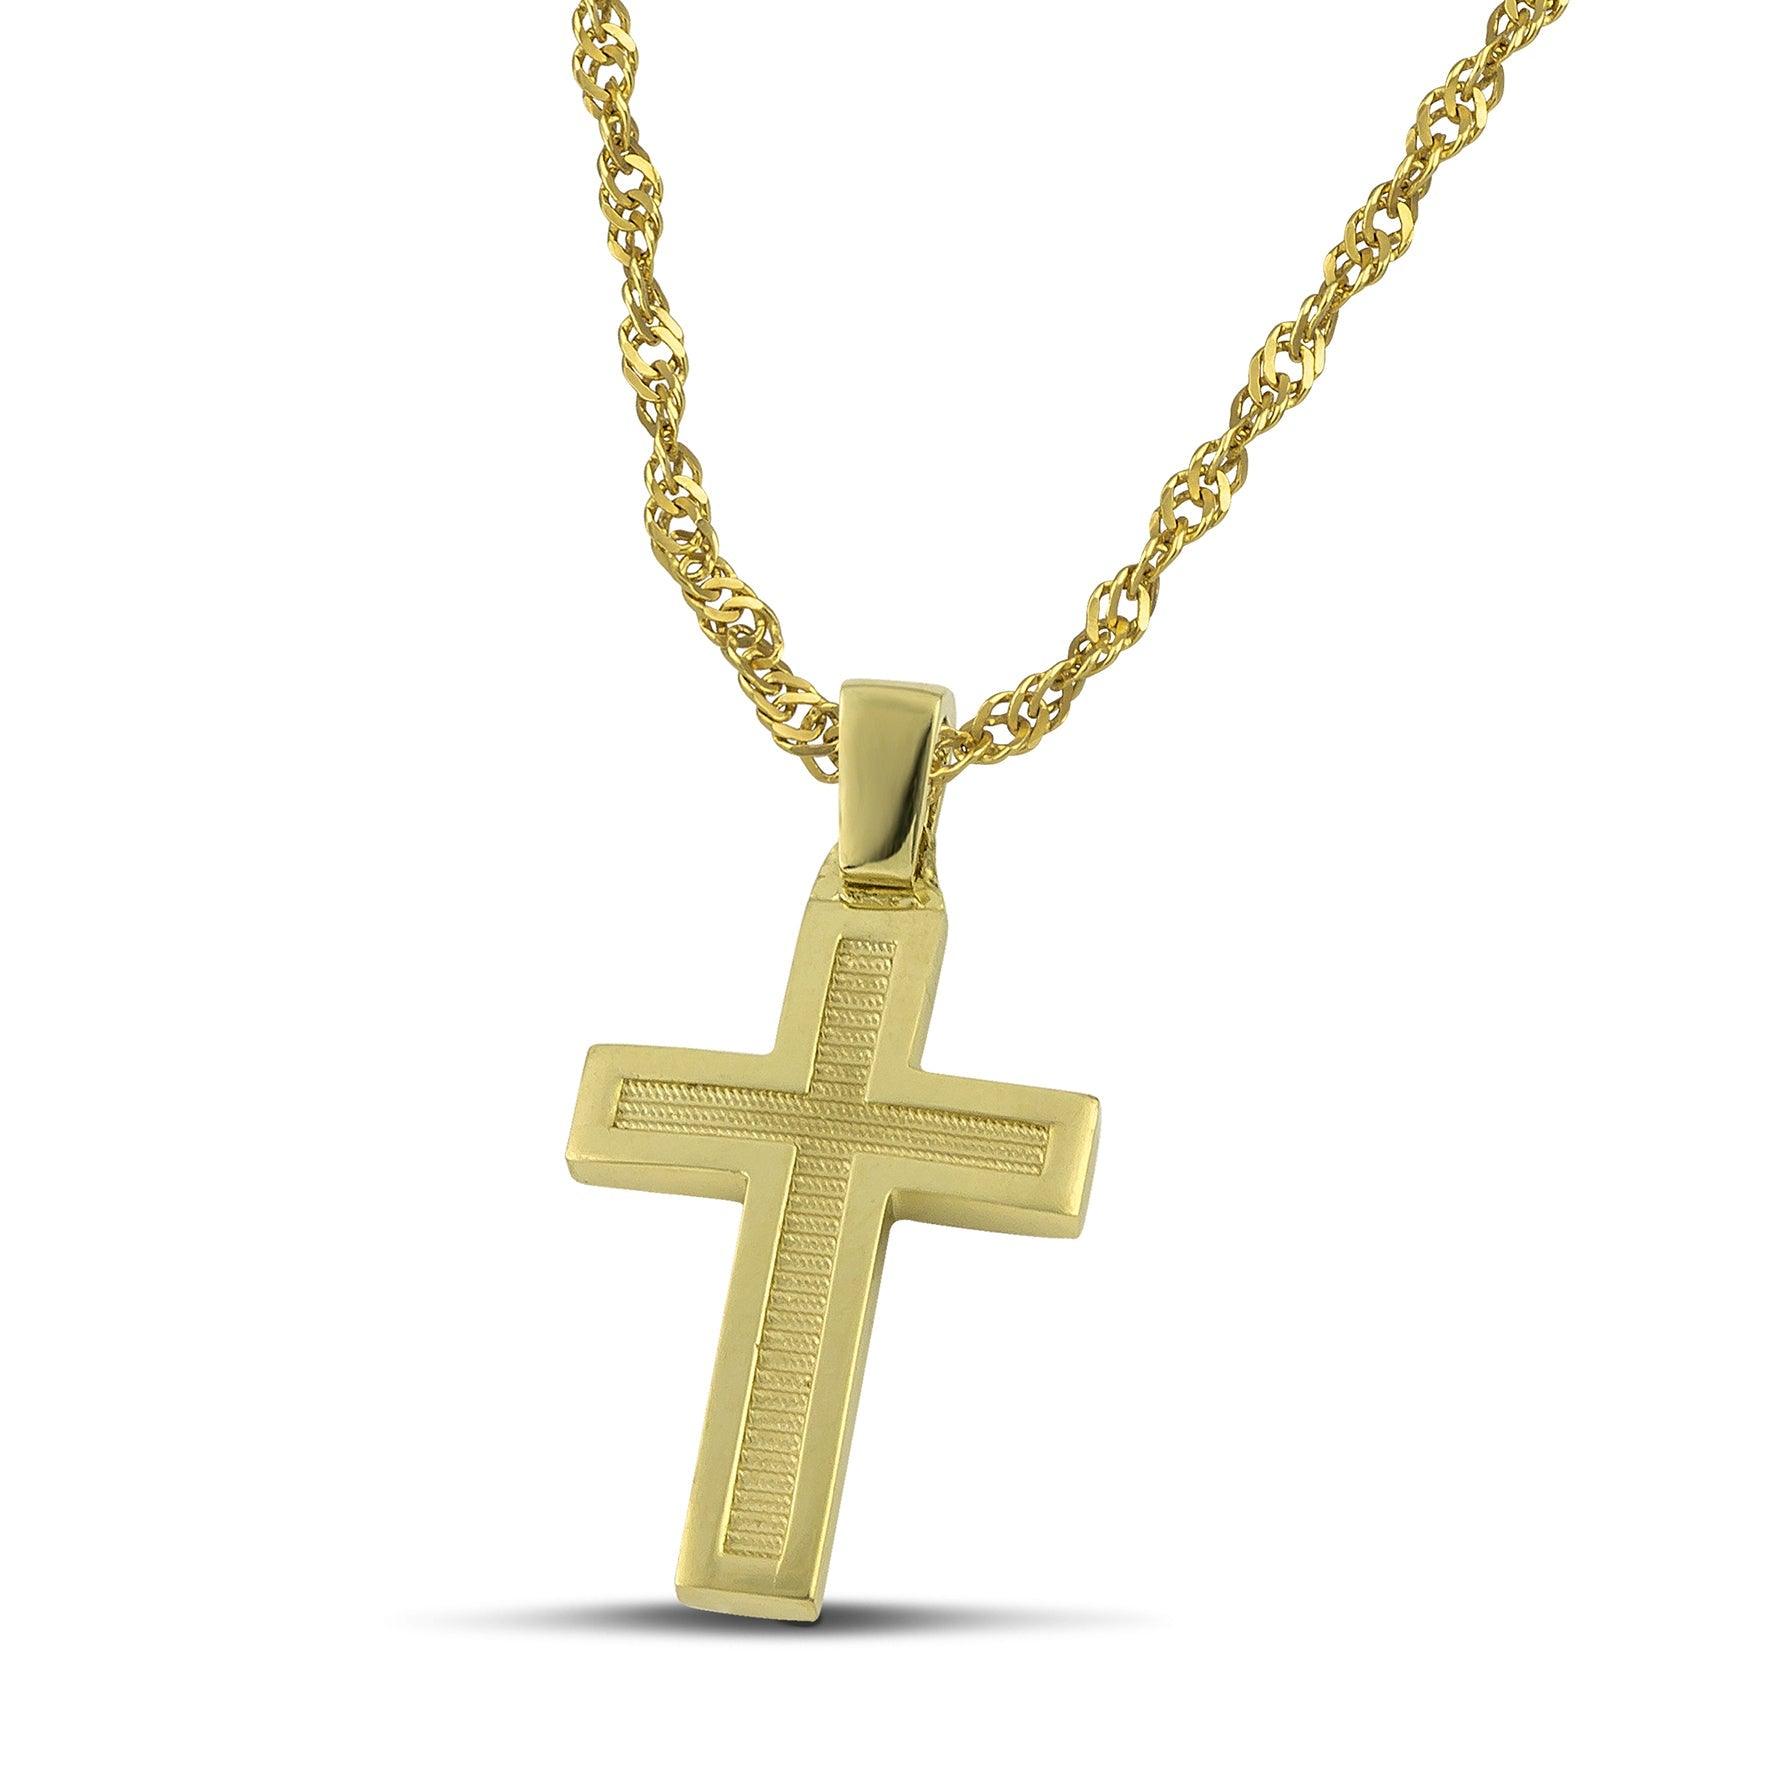 Μοντέρνος βαπτιστικός σταυρός για αγόρι από χρυσό Κ14, διπλής όψης, φορεμένος σε χοντρή αλυσίδα. 